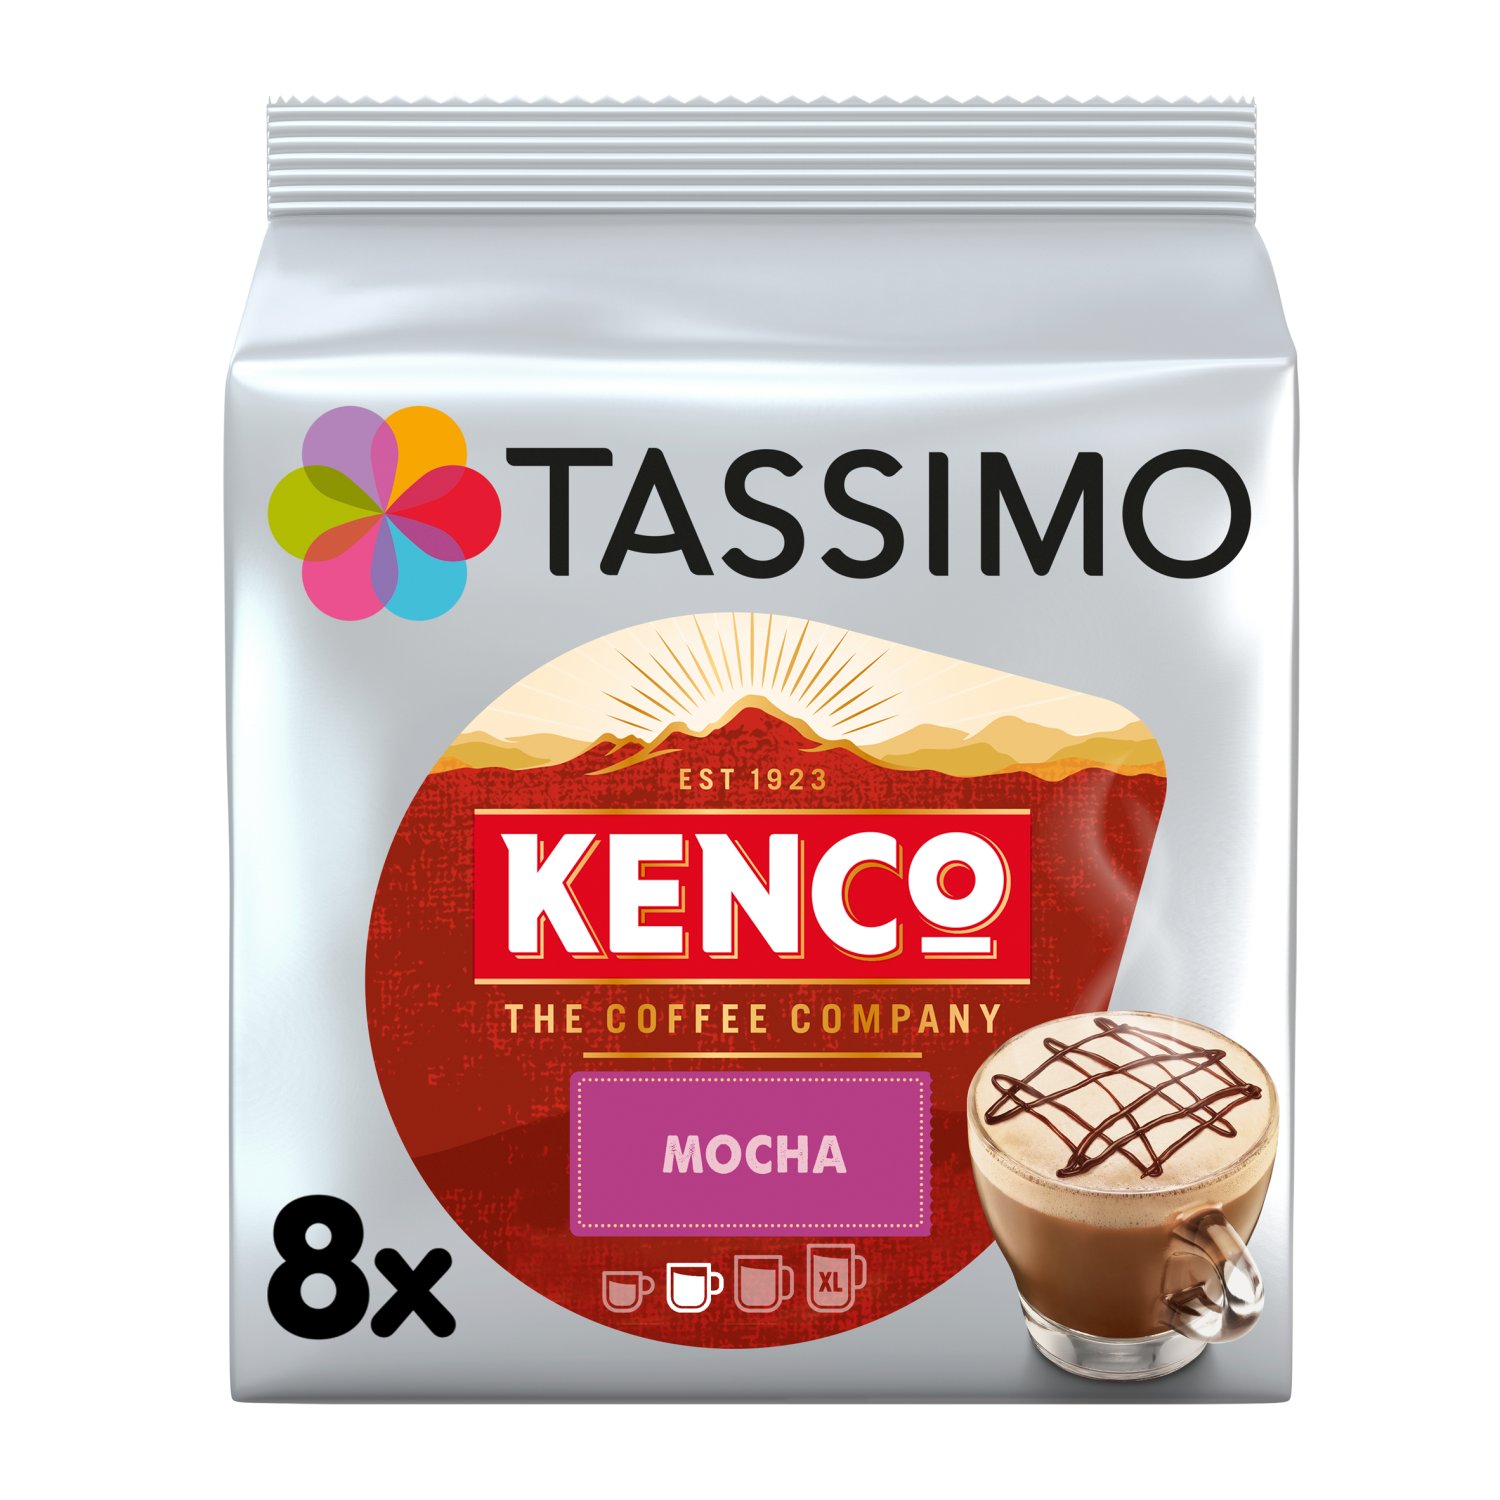 Tassimo Kenco Mocha Pods 8 Pack (208 g)